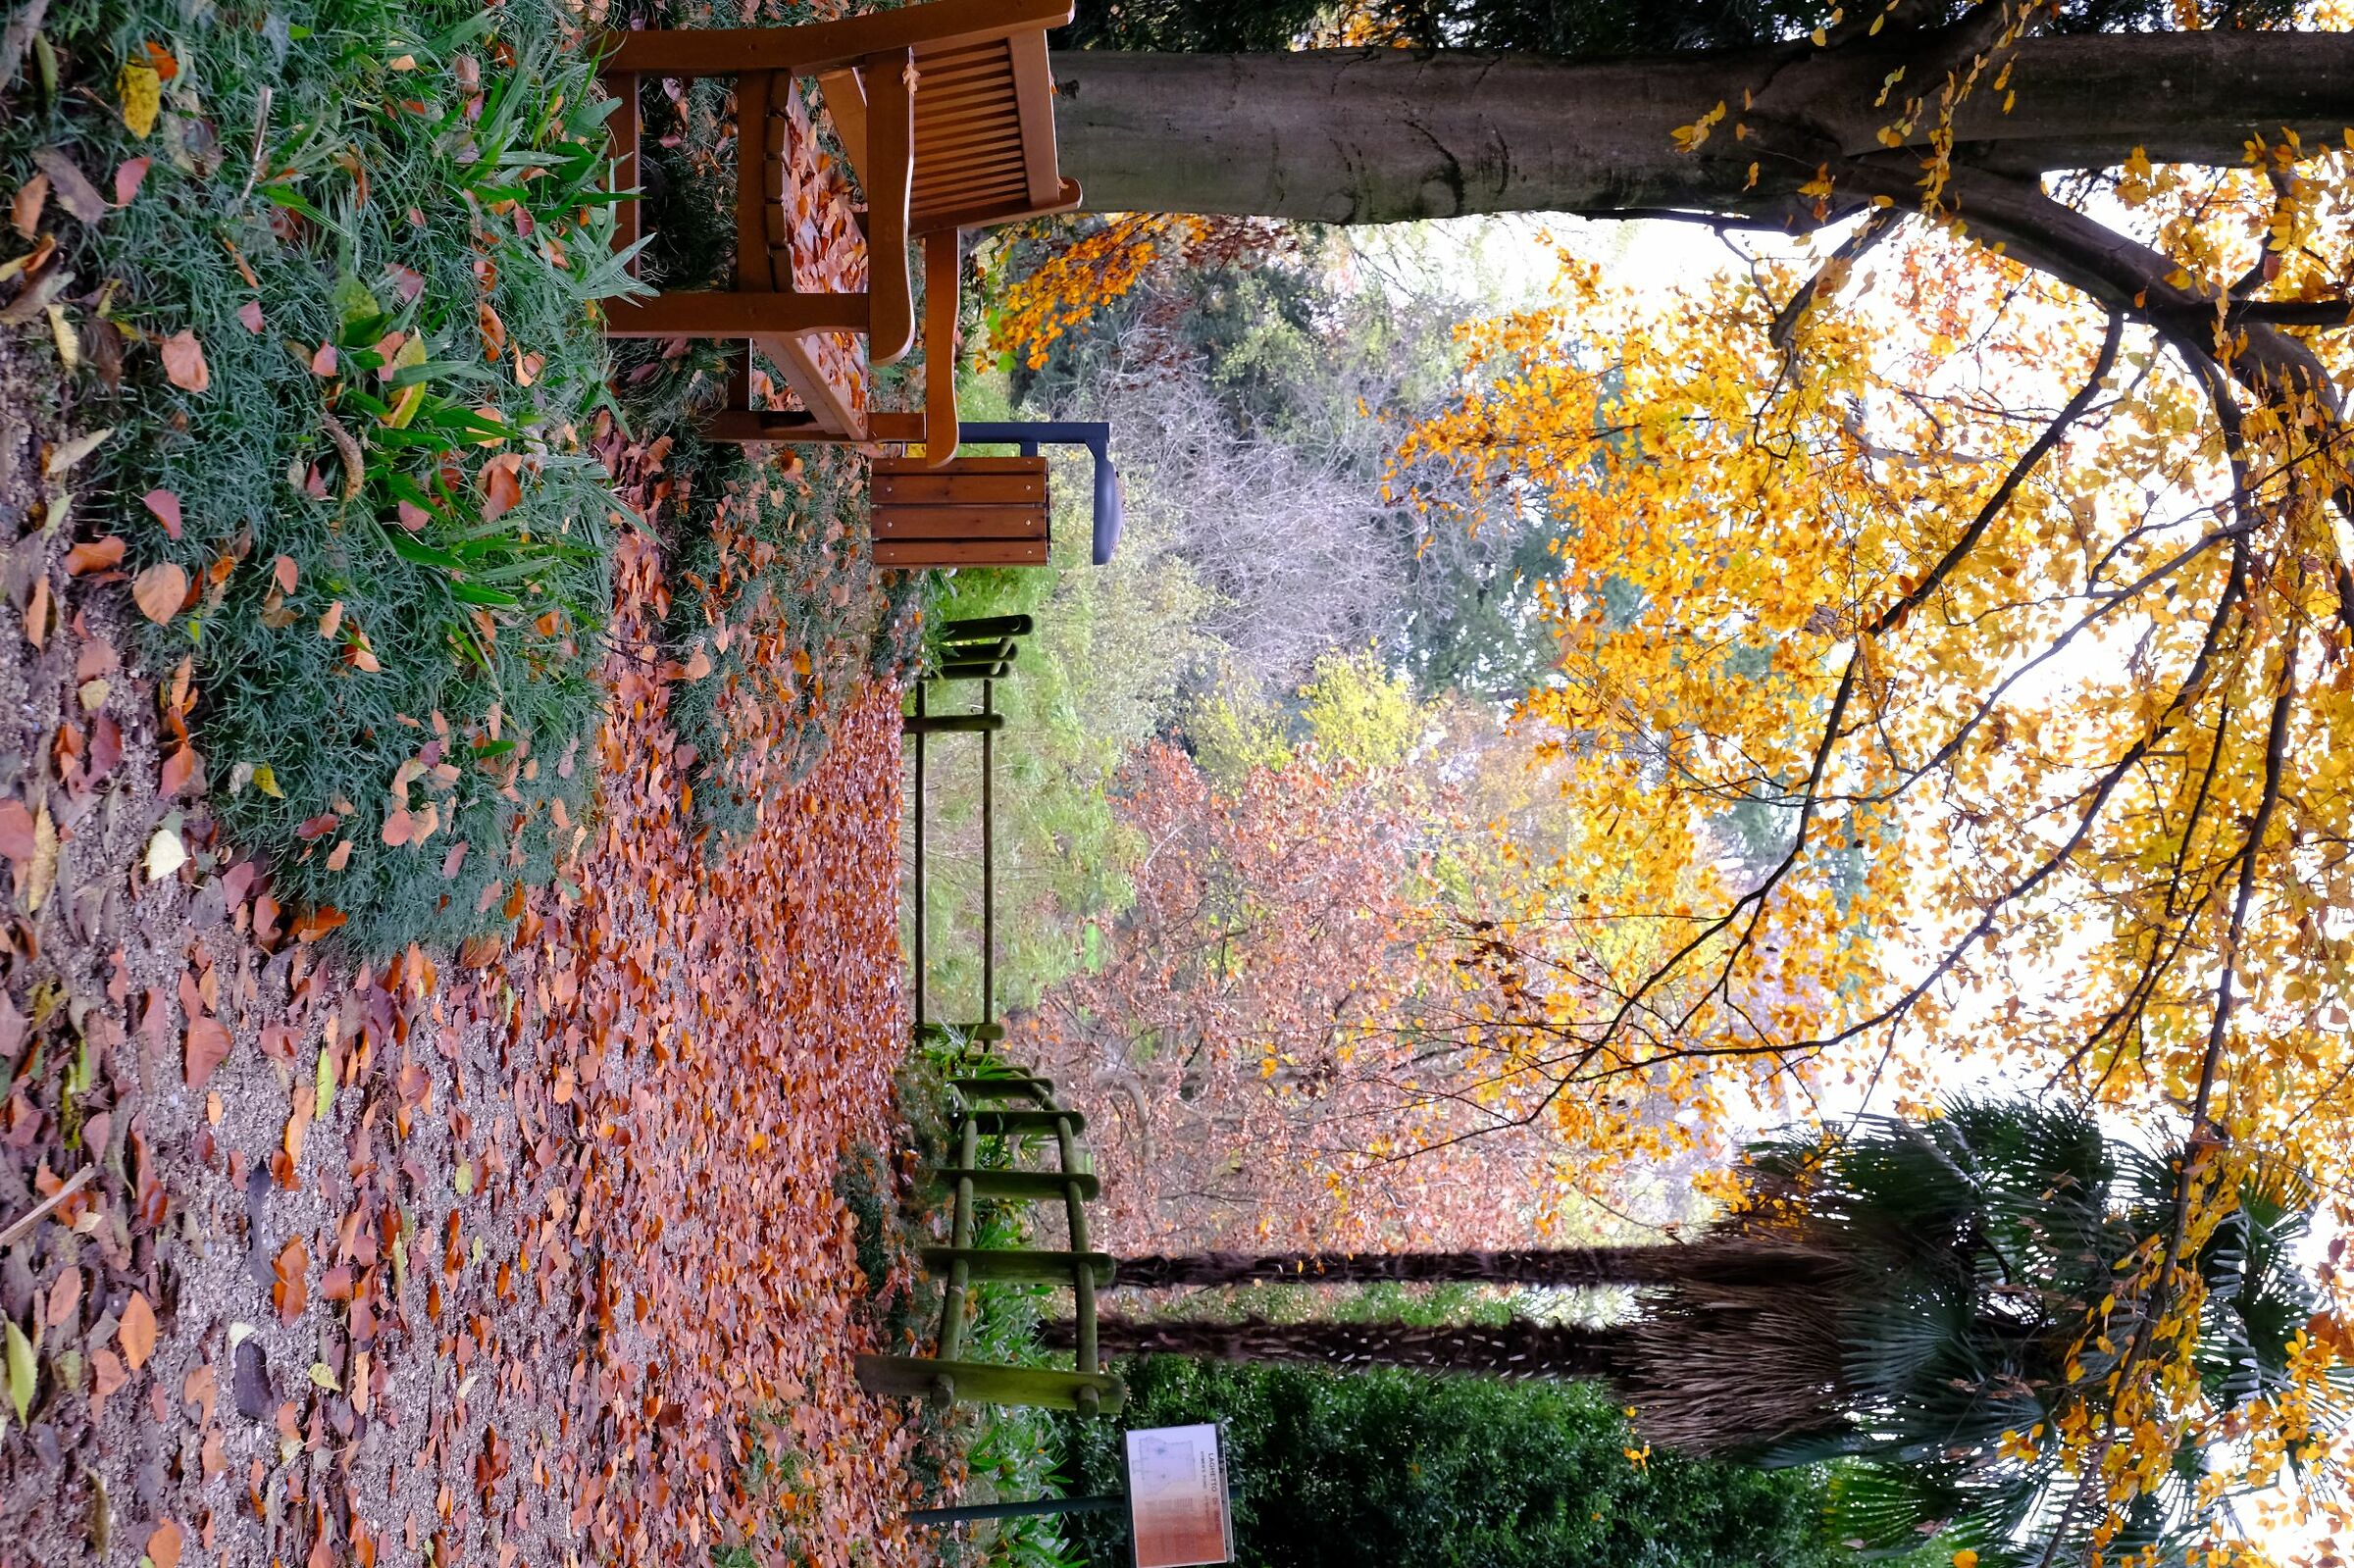 Villa Manin iil parco in autunno...